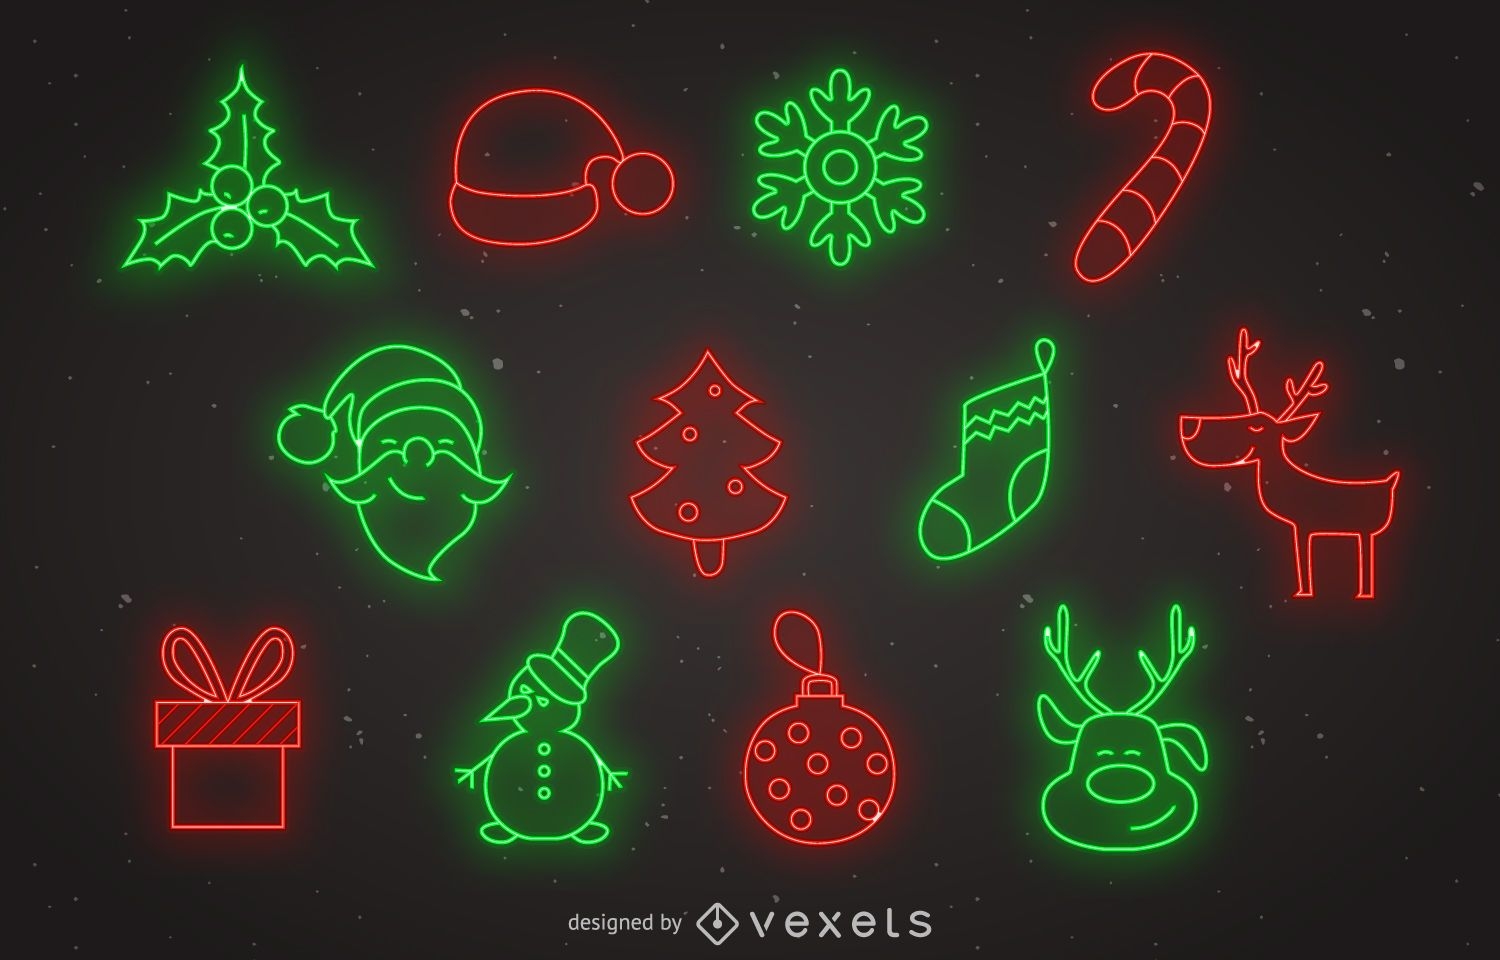 Neon Christmas icon set